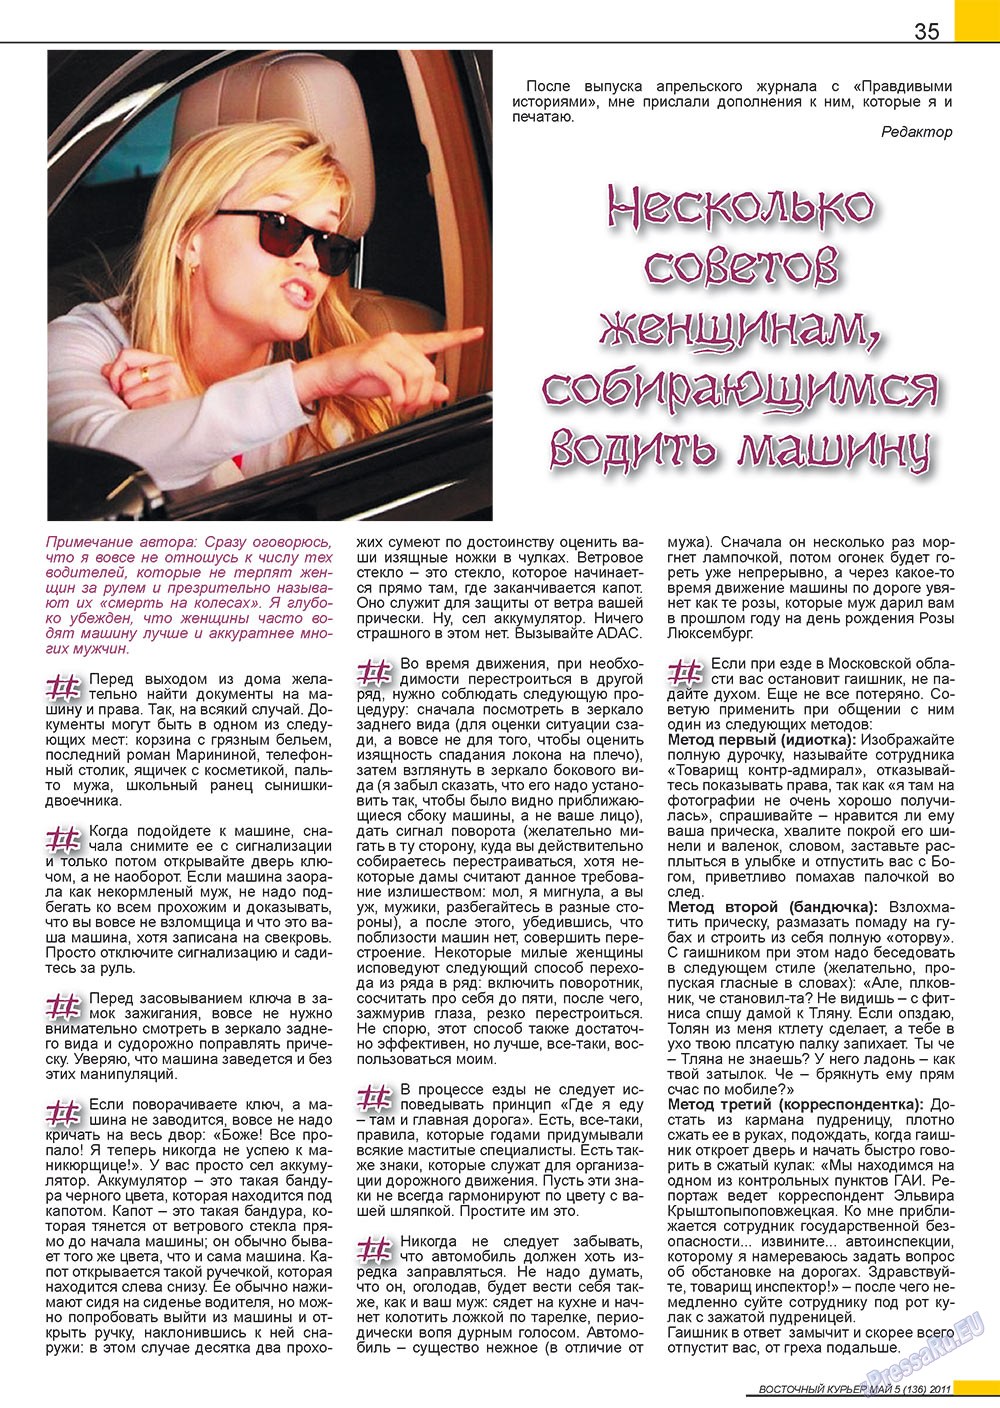 Восточный курьер (журнал). 2011 год, номер 5, стр. 35